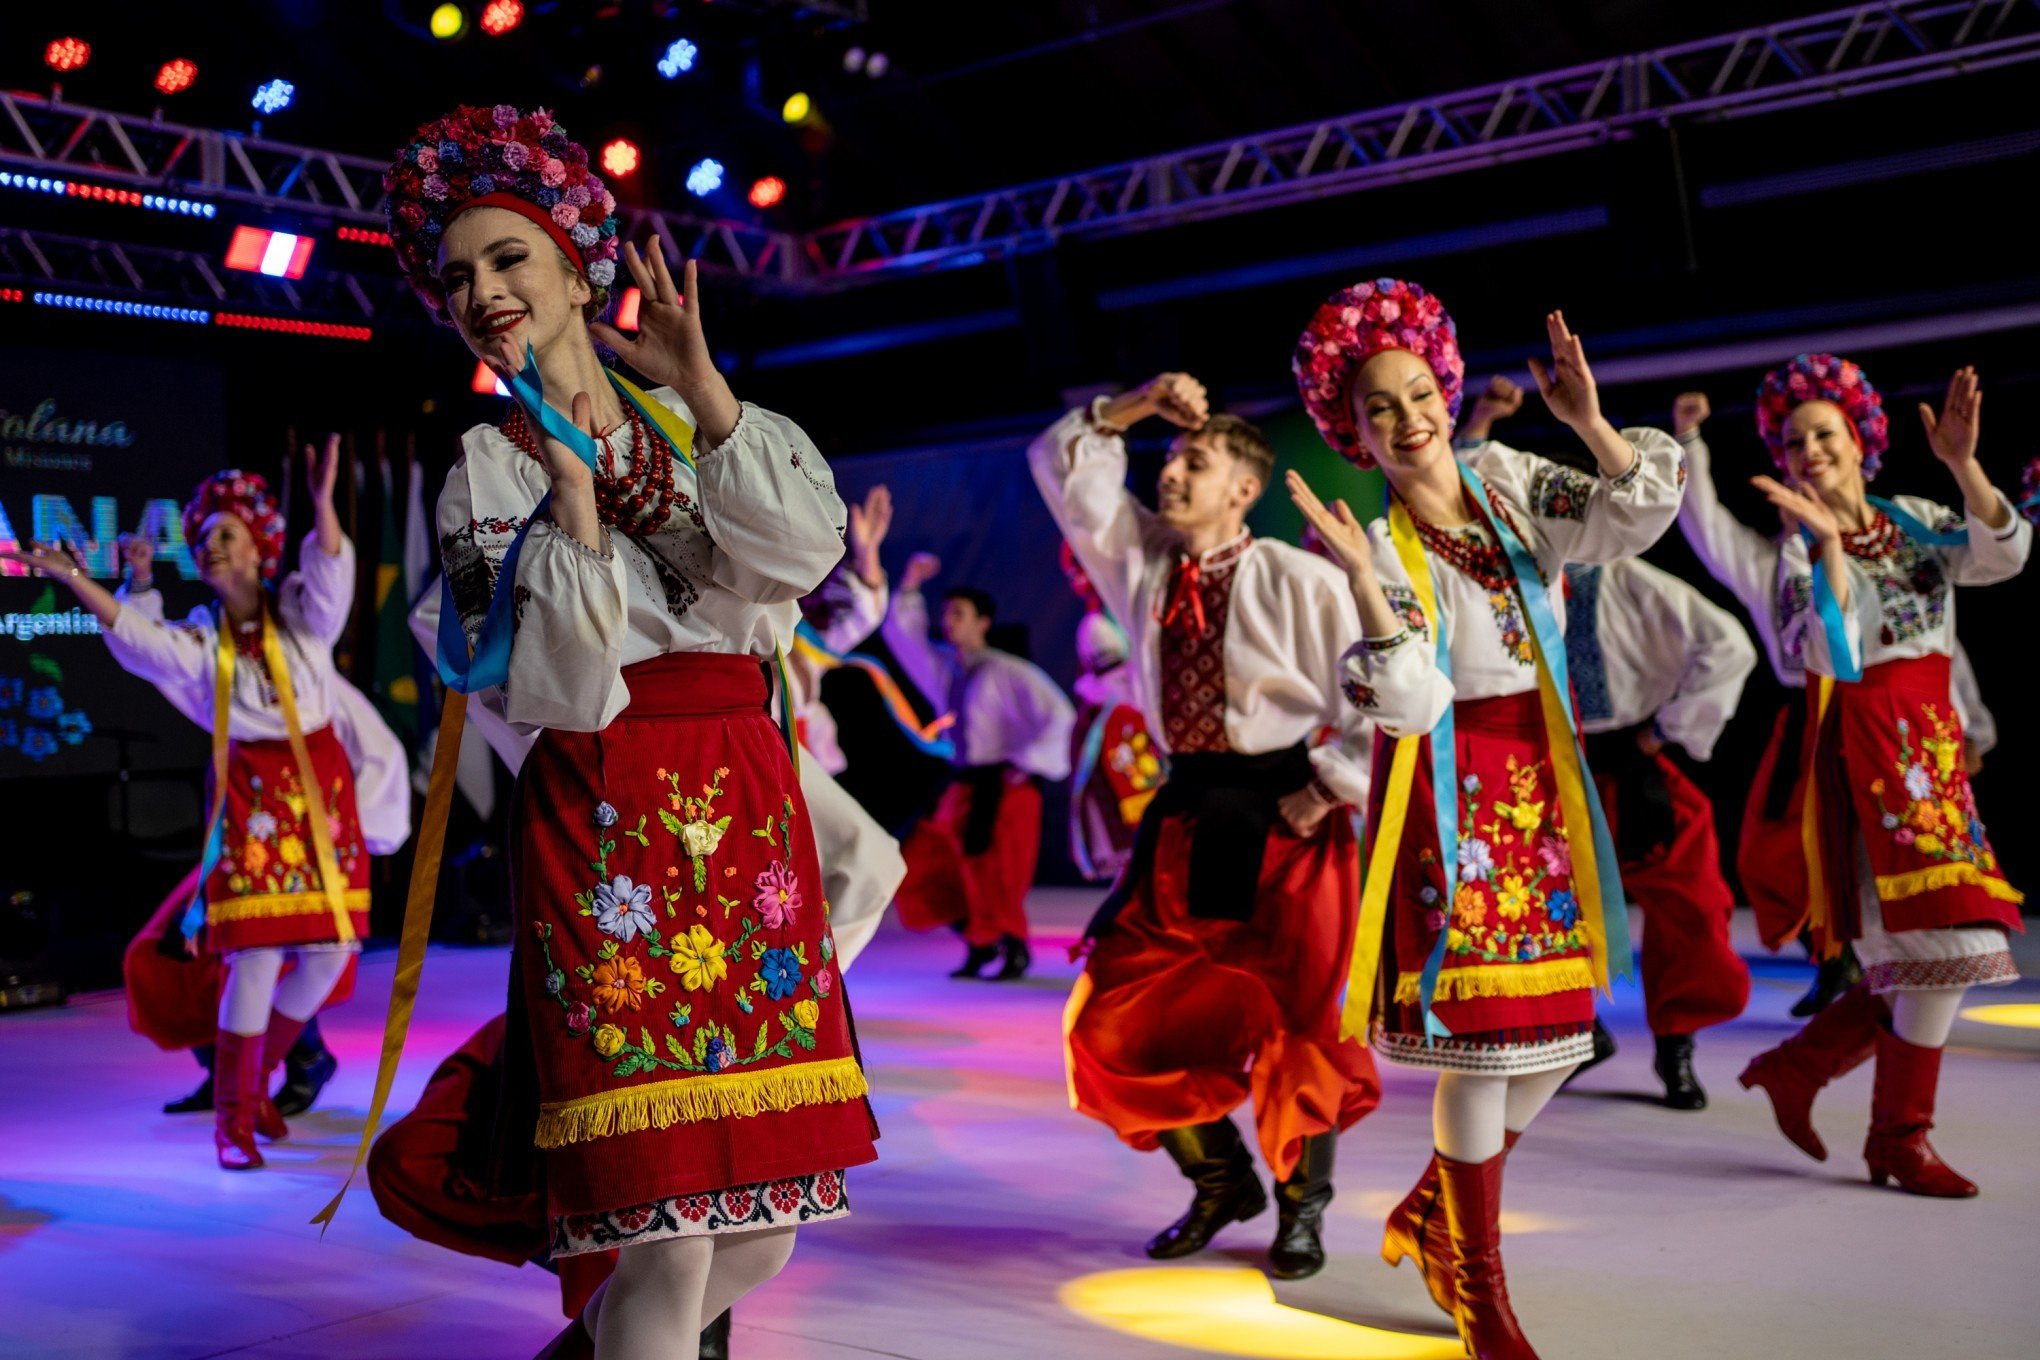 Festival Internacional de Folclore de Nova Petrópolis vai reunir 16 grupos culturais; saiba mais